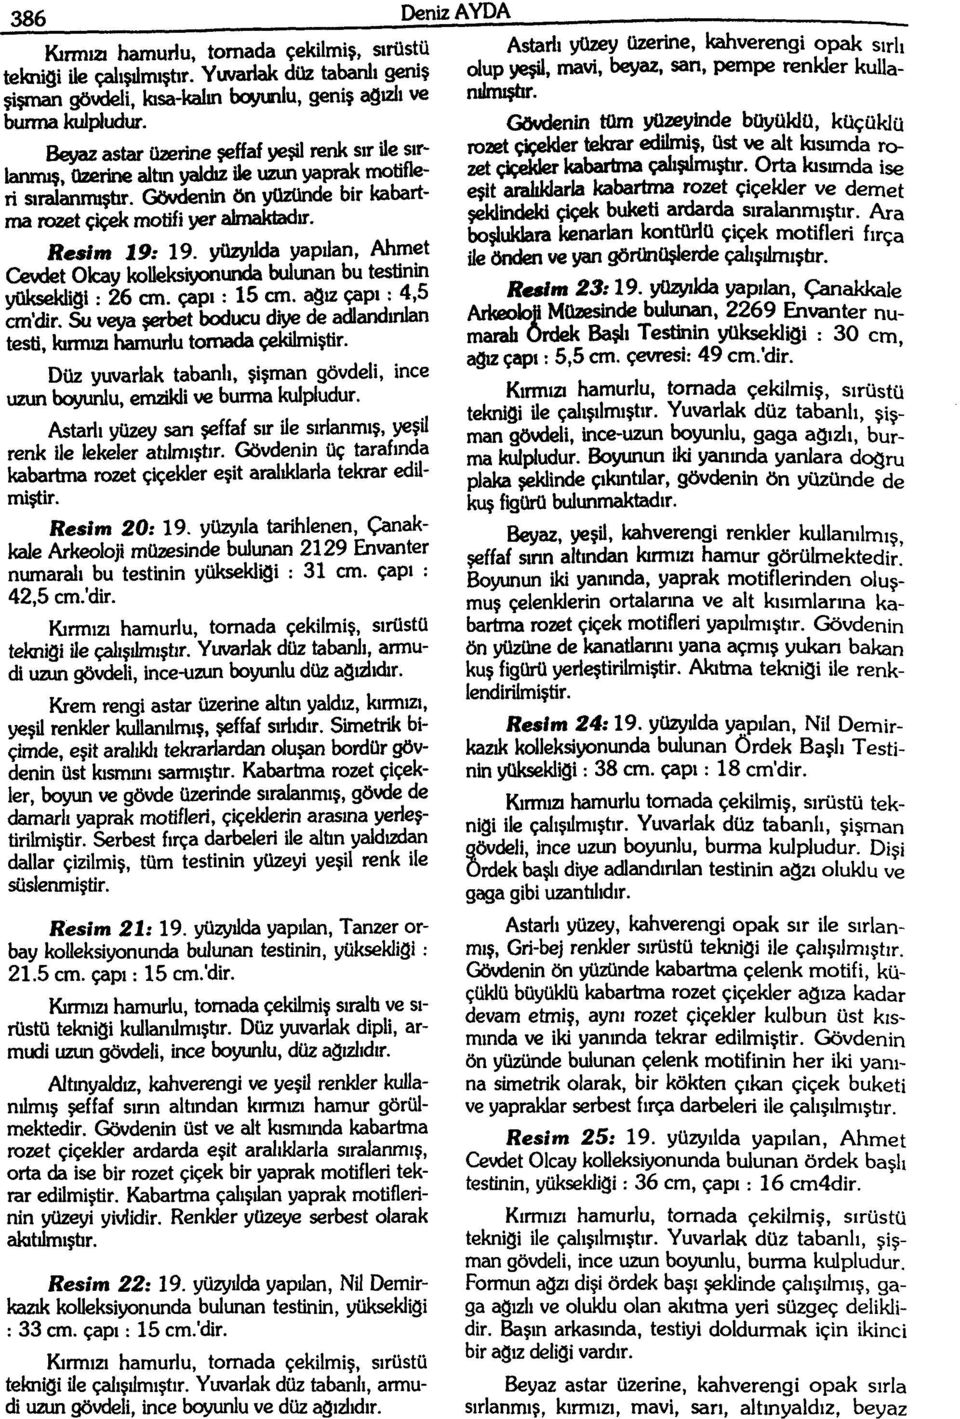 yüzyılda yapılan, Ahmet Cevdet Ok:ay kolleksiyonufkia bulunan bu testinin yüksekliği: 26 cm. çapı: 15 cm. ağız çapı: 4,5 cm'dir.